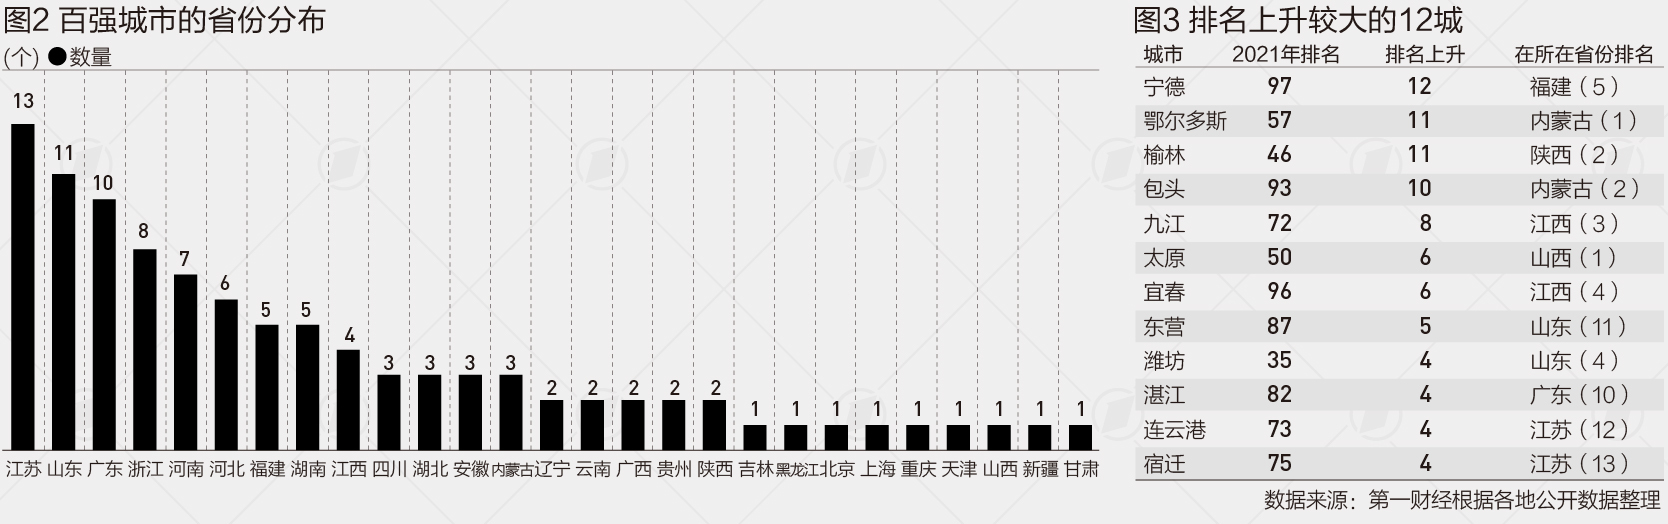 武汉人均gdp_武汉常住人口猛增百万重回中部第一,长沙人均GDP还是不如武汉